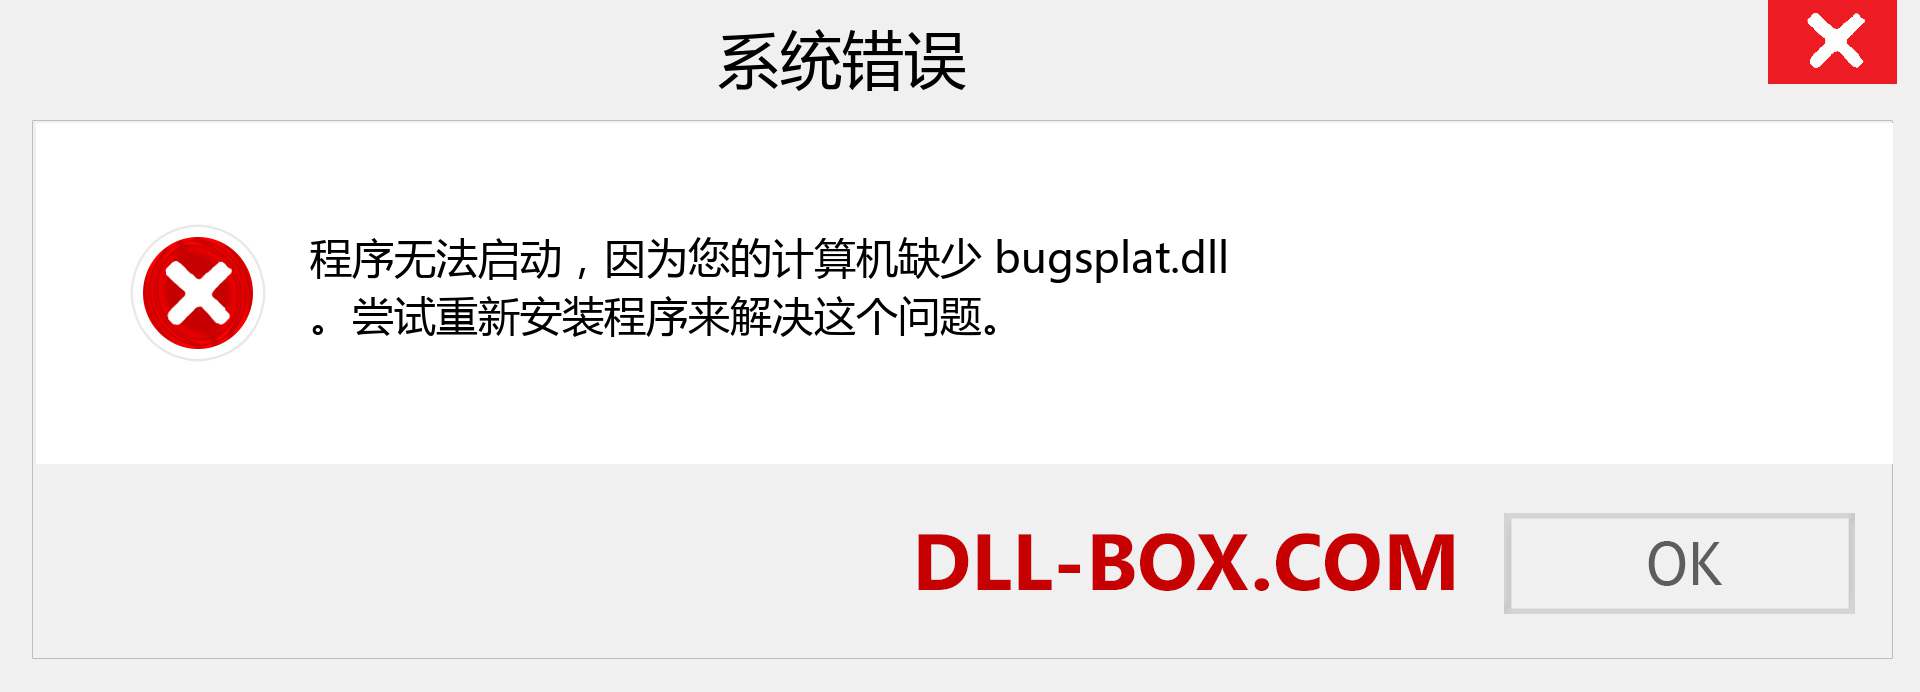 bugsplat.dll 文件丢失？。 适用于 Windows 7、8、10 的下载 - 修复 Windows、照片、图像上的 bugsplat dll 丢失错误